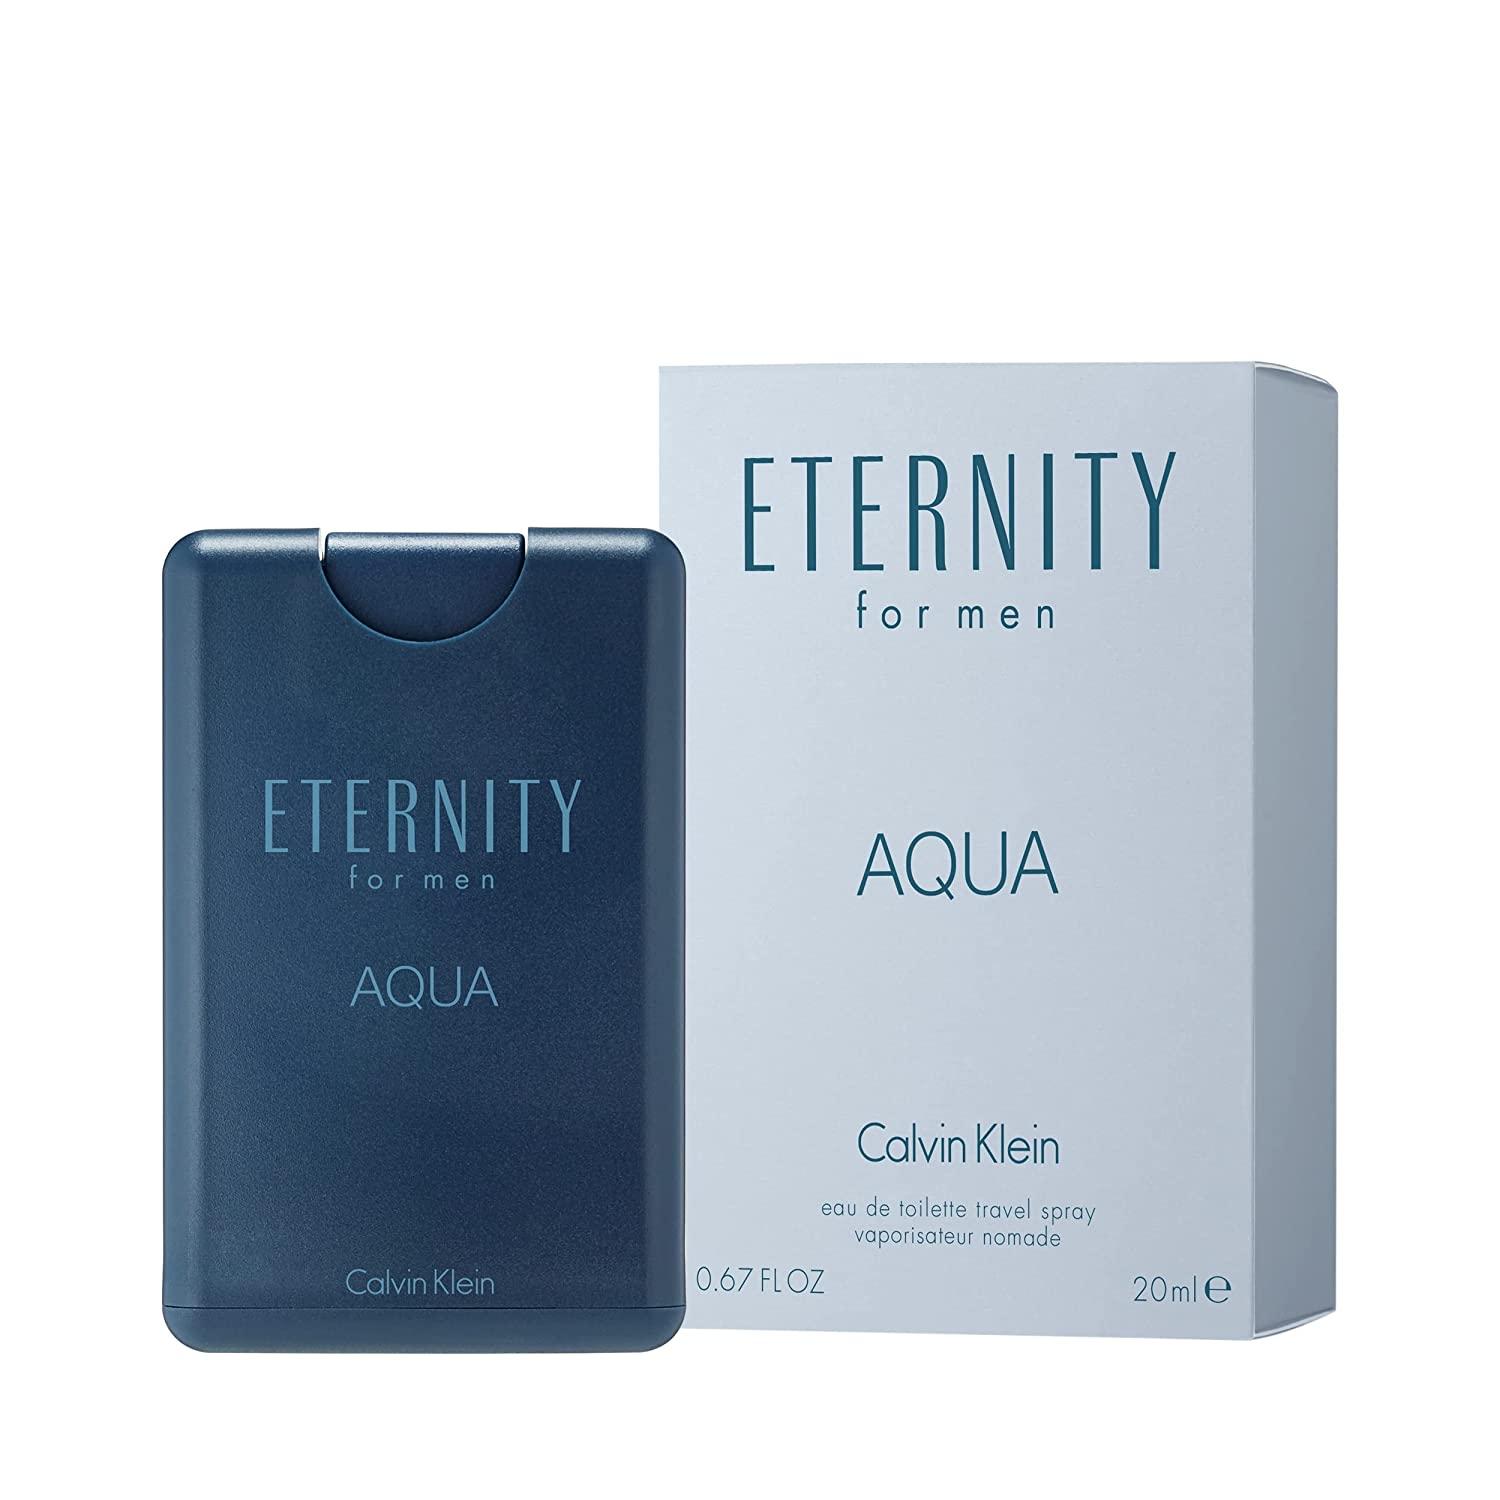 Oz de AQUA (Pack Calvin Fl Klein Calvin Toilette for Eau Men 1) 0.67 AQUA for Klein of Men Eternity ETERNITY